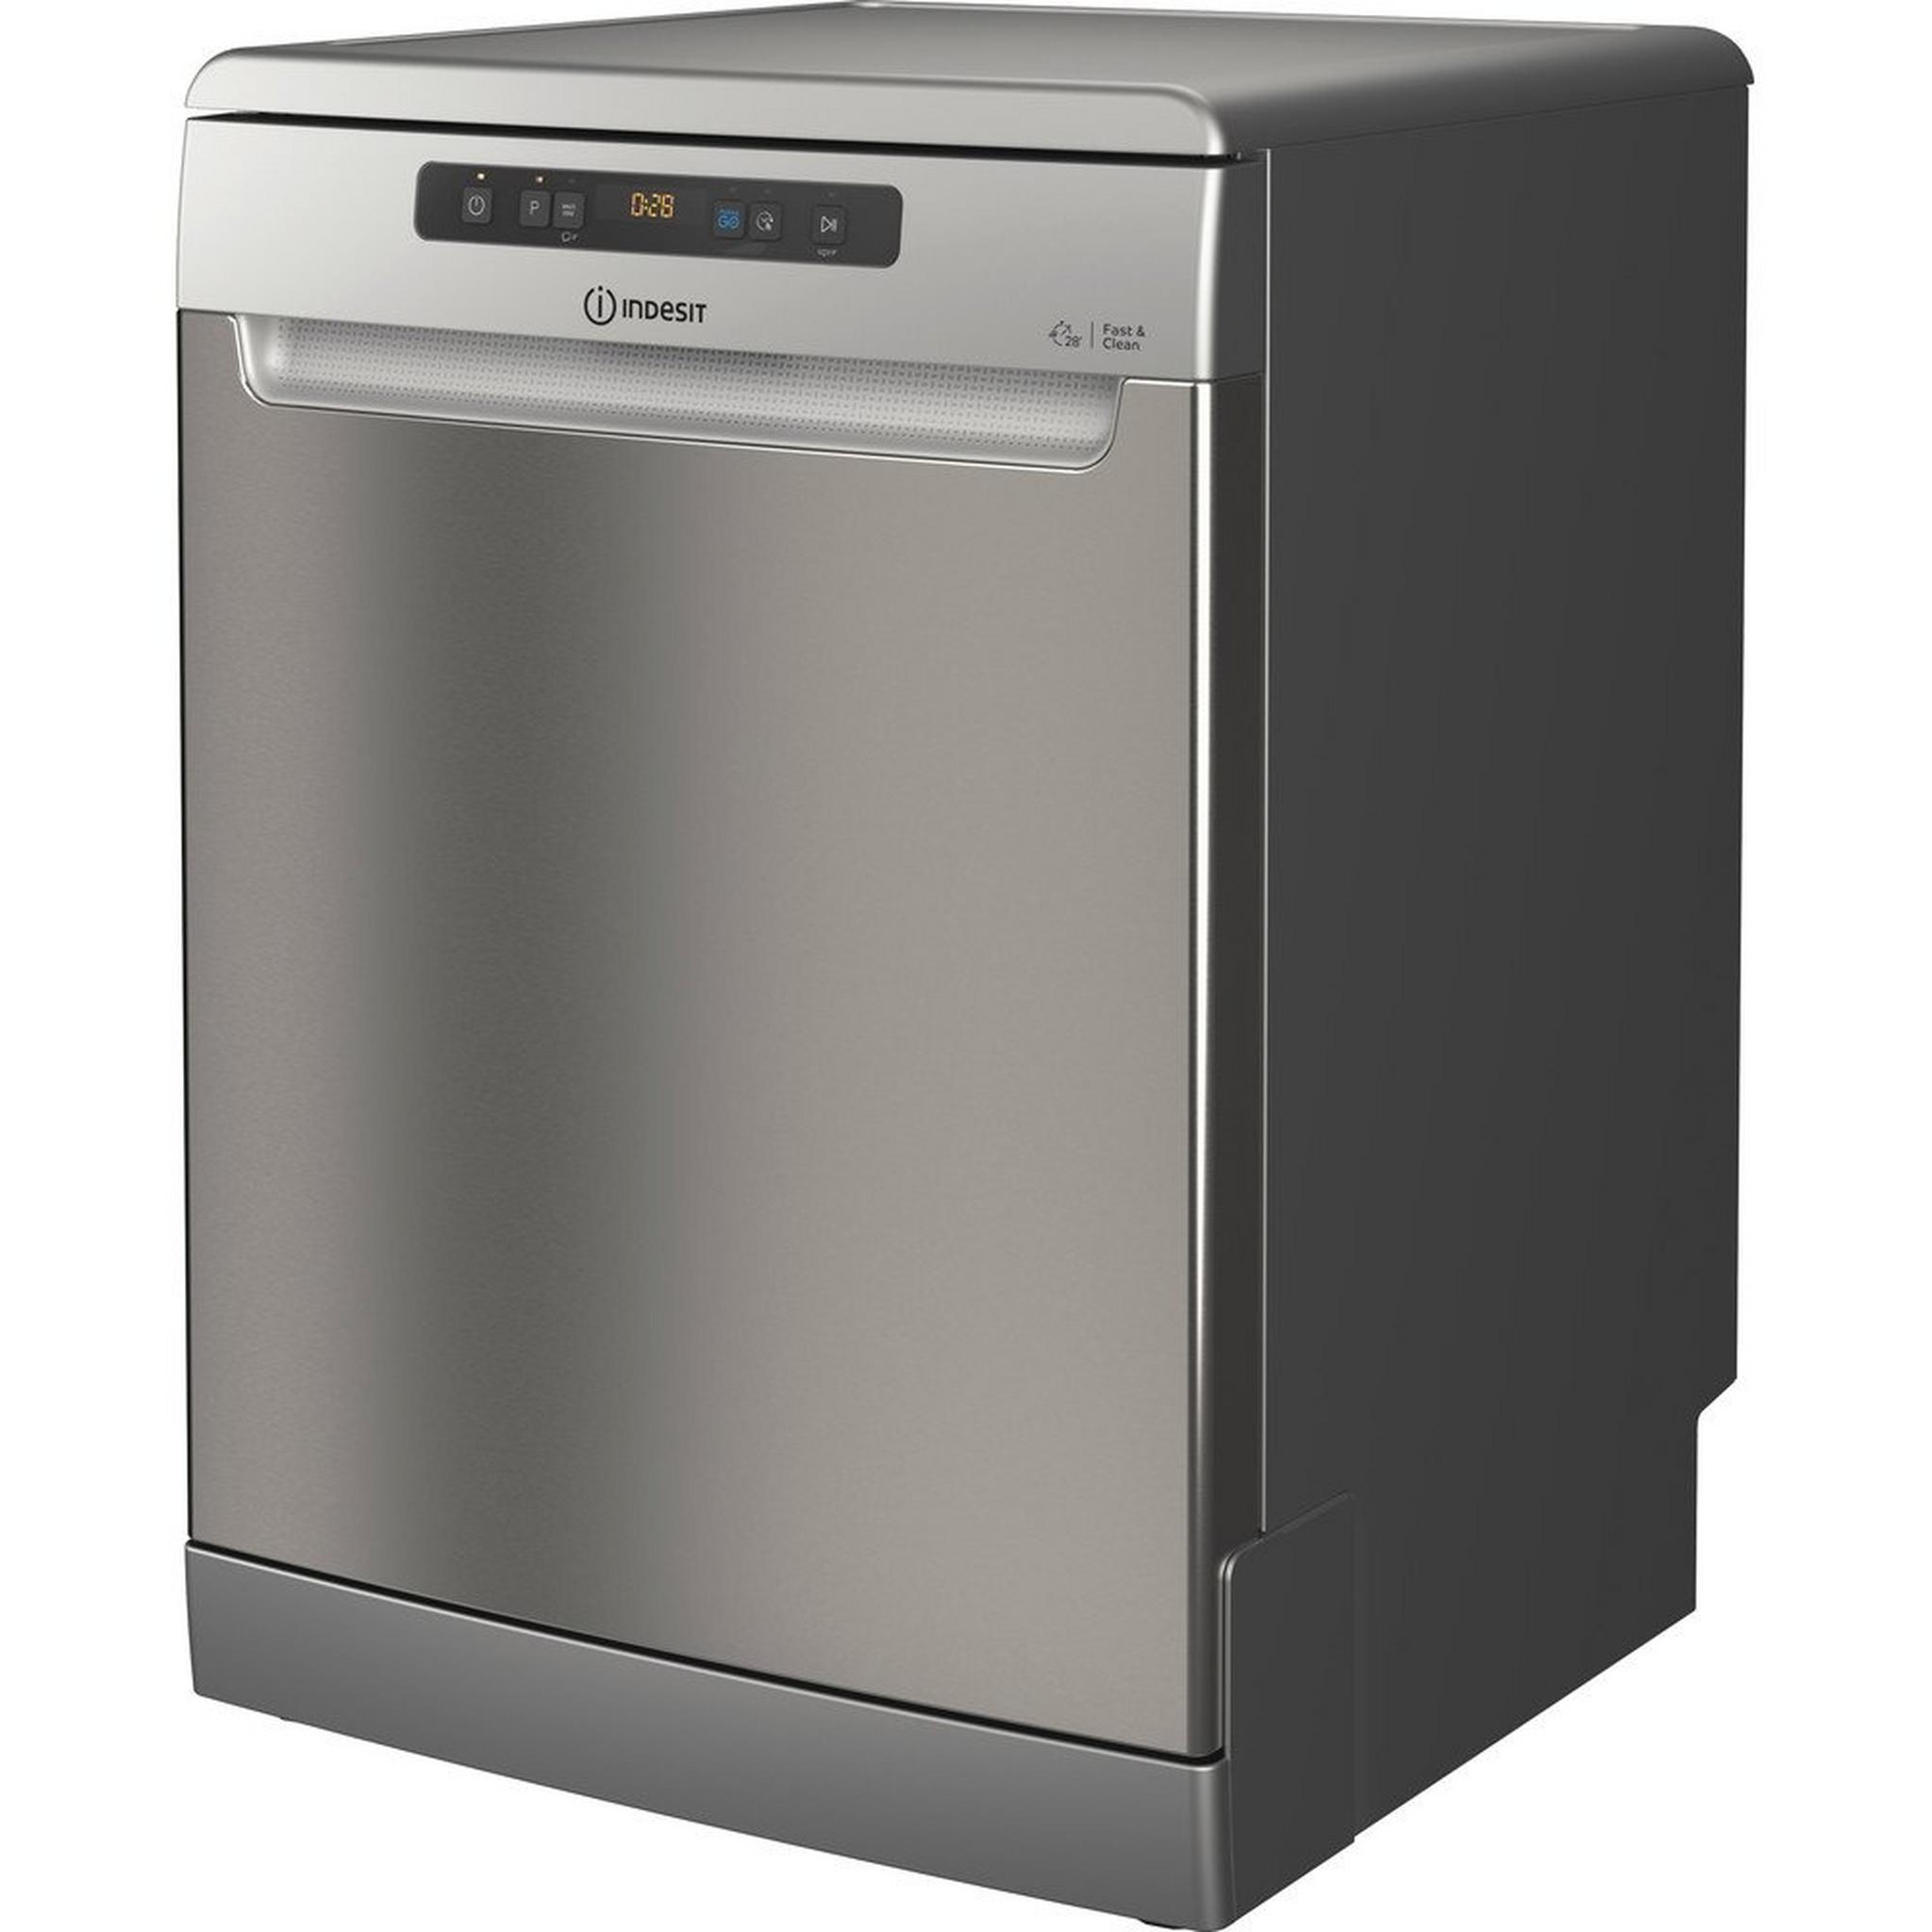 Indesit 14 Place Settings 8 Program Freestanding Dishwasher (DFO 3C23 X UK) - Inox